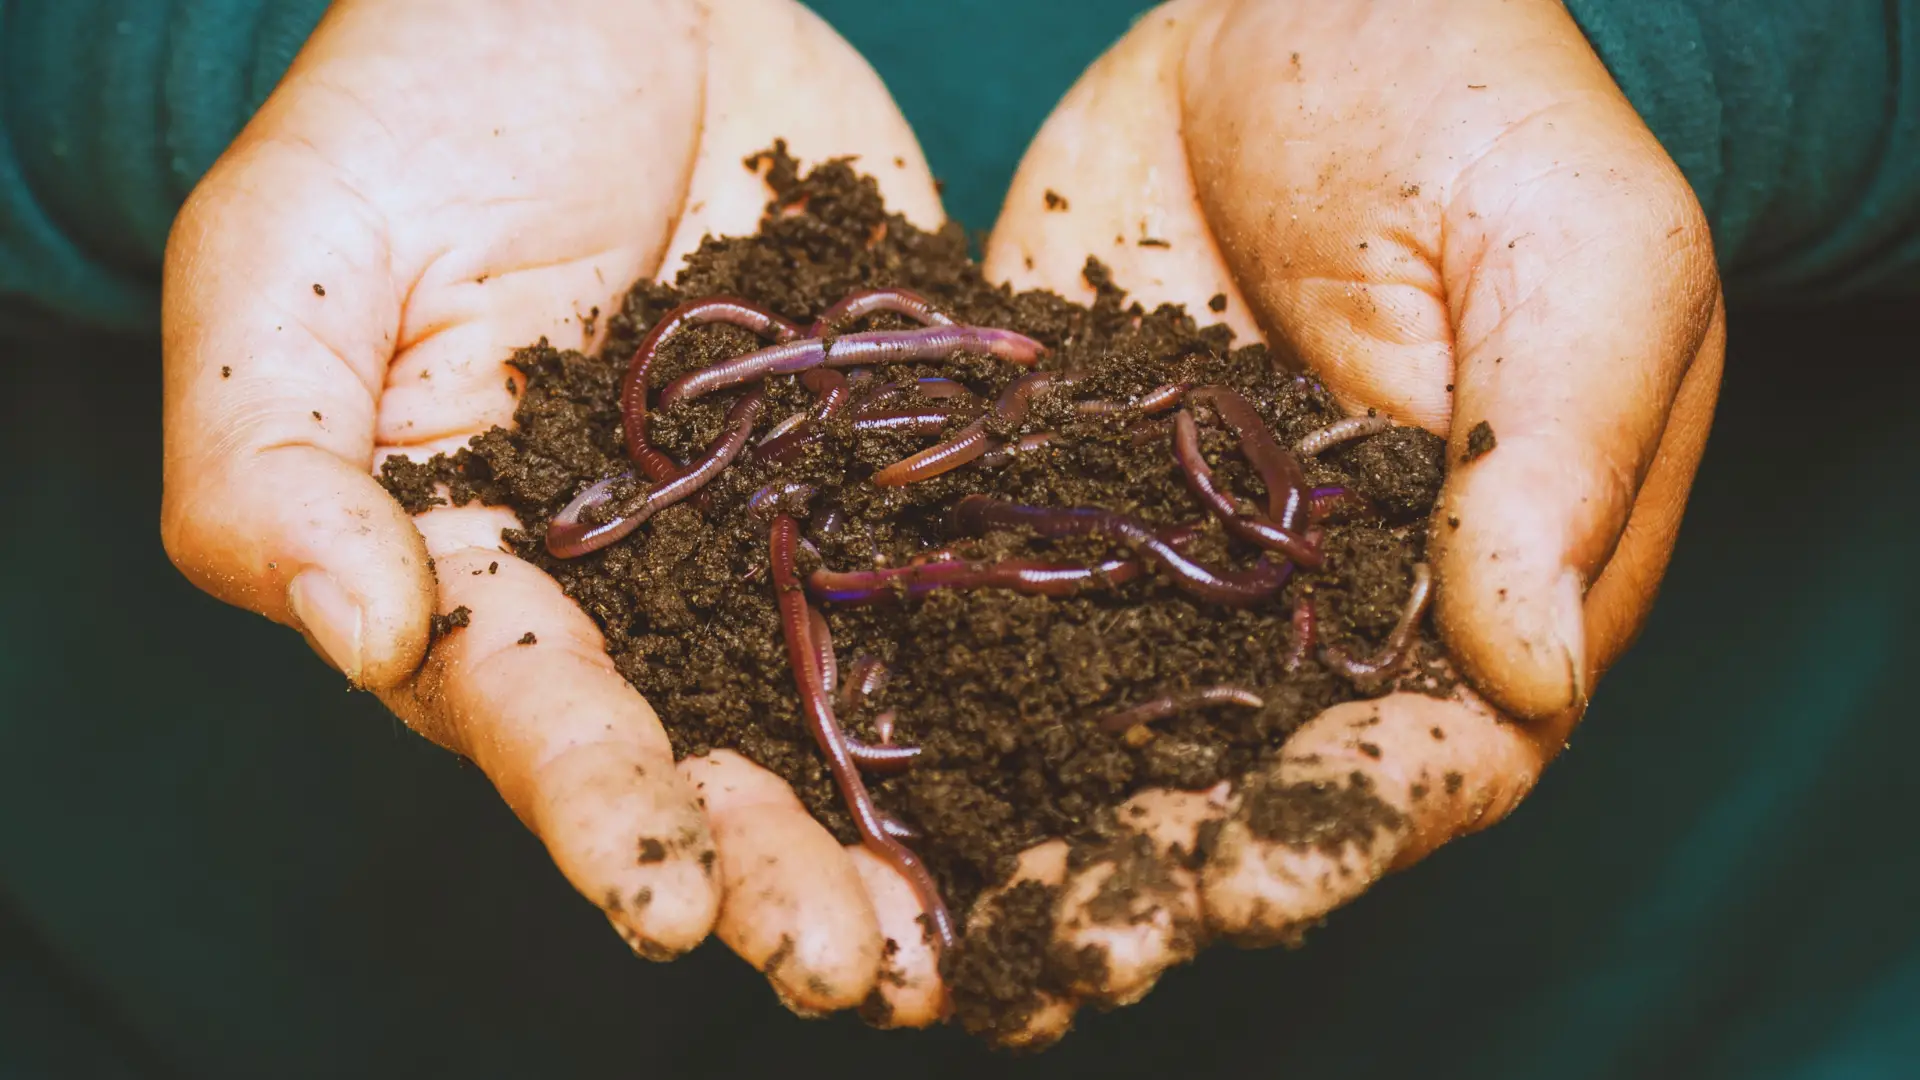 Do Worms Like Mushroom Compost